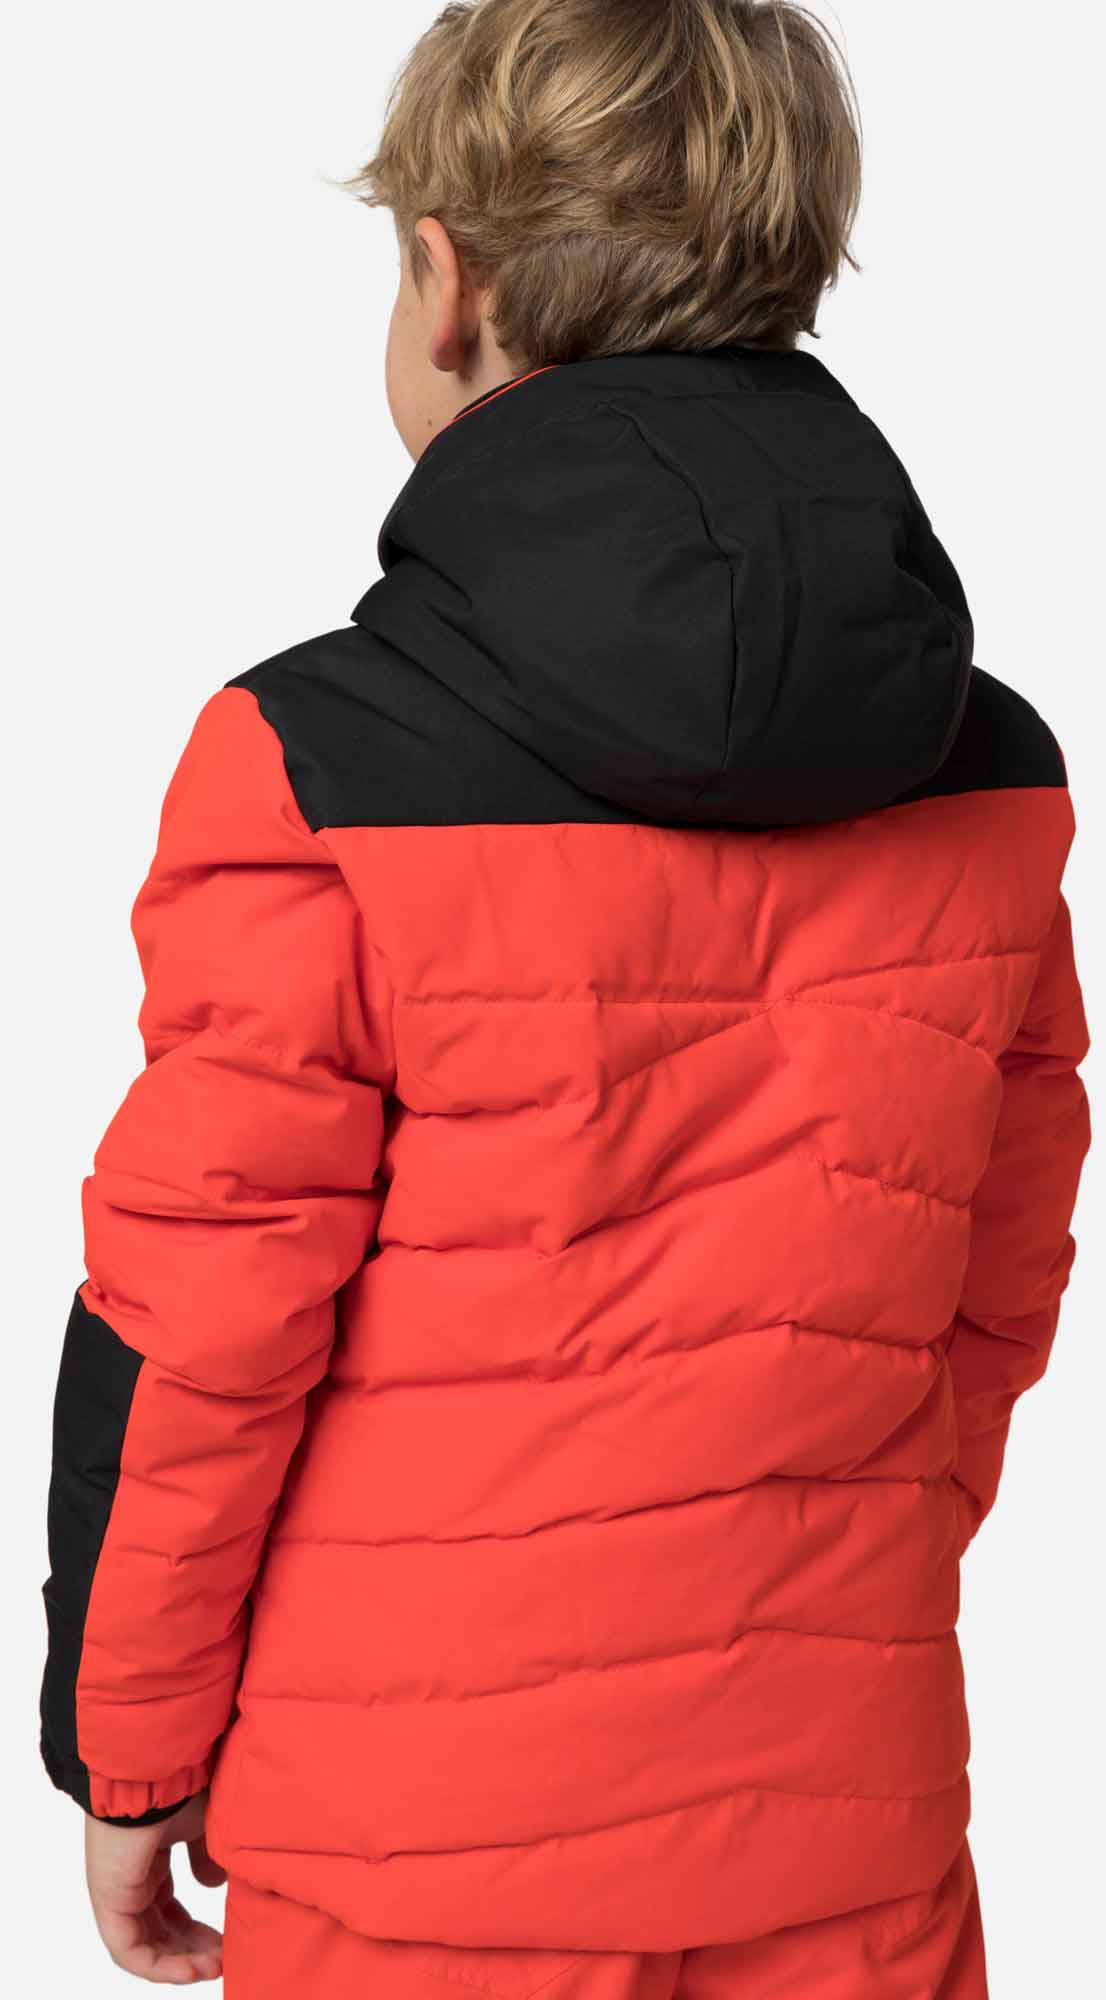 Children’s ski jacket